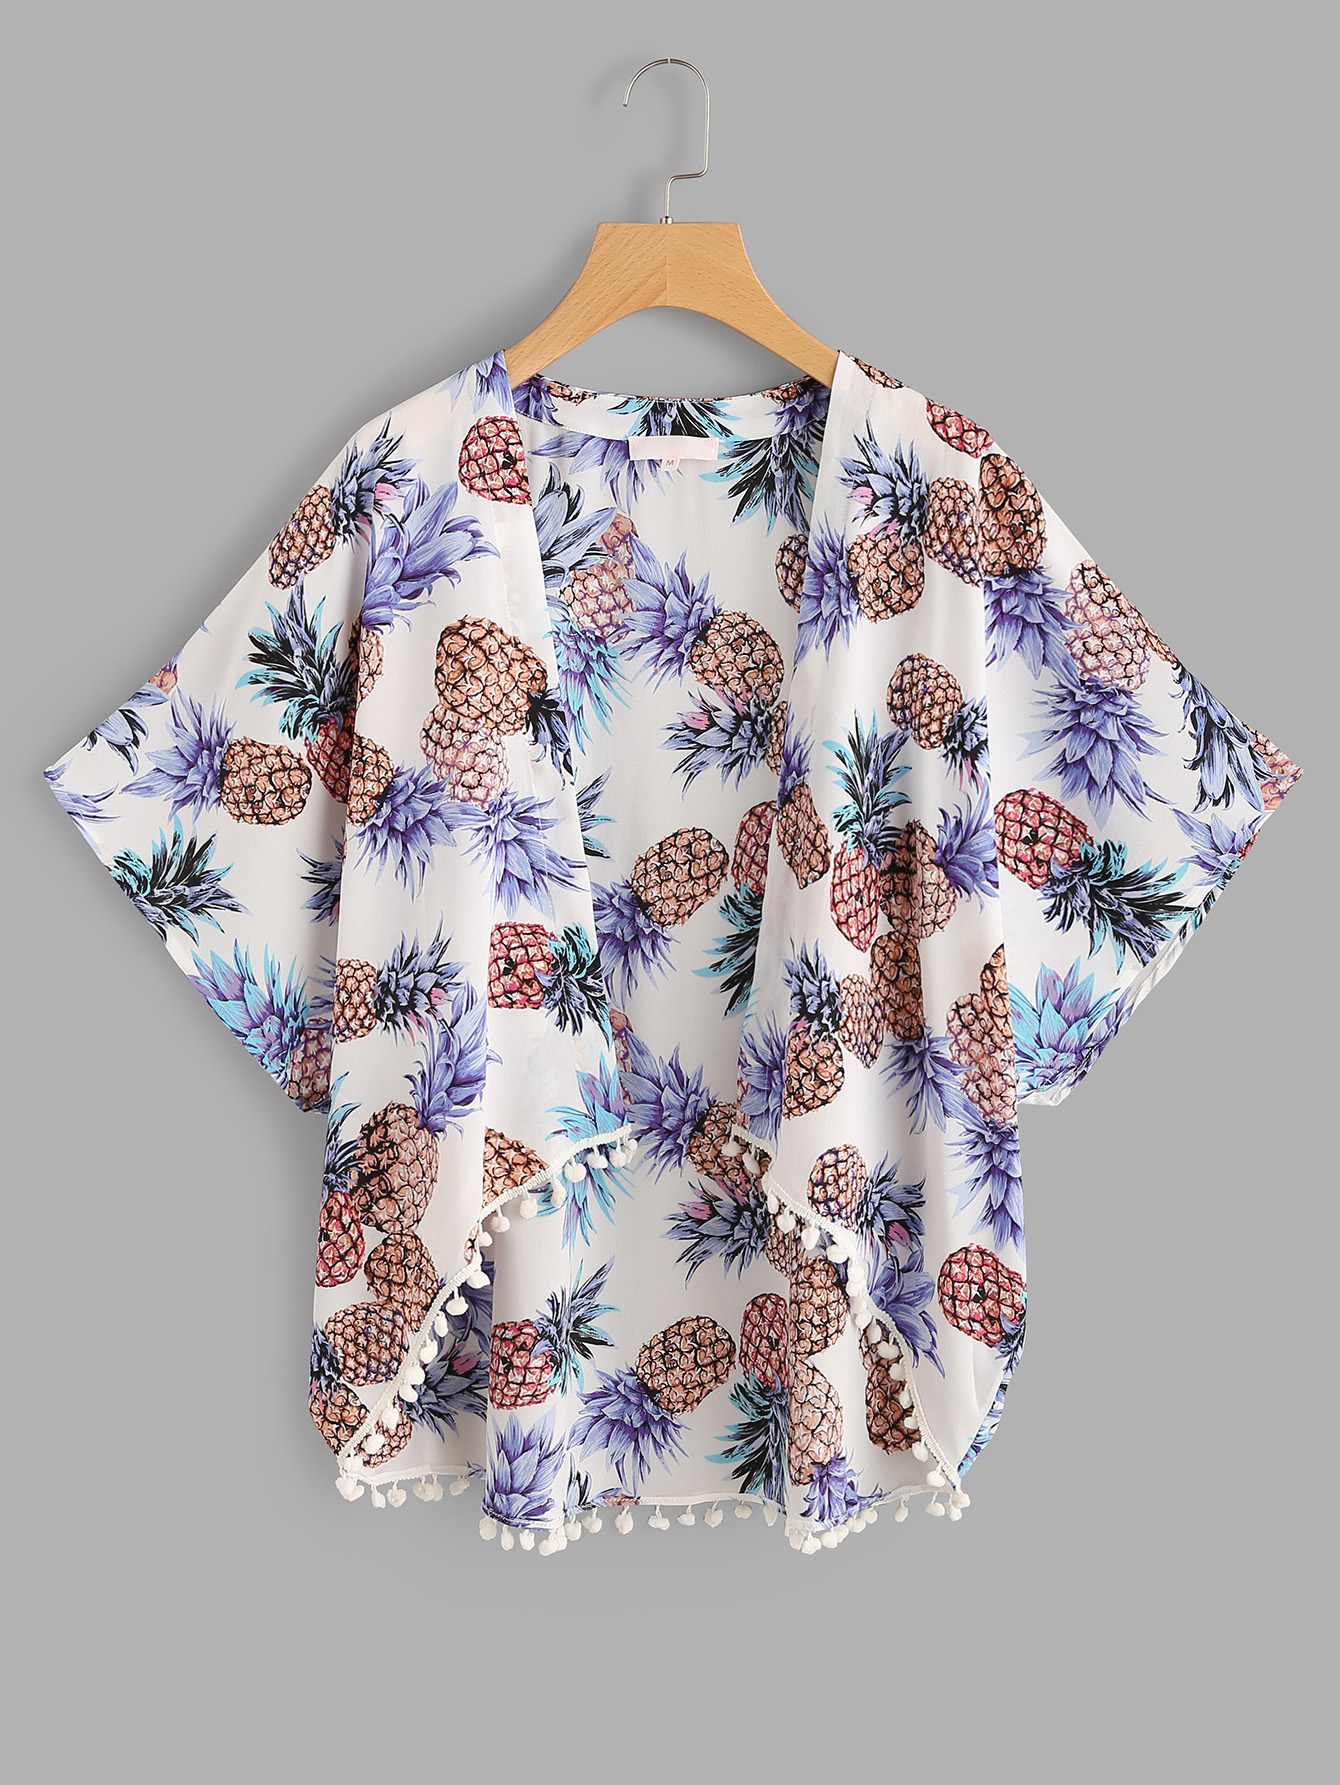 Baby Girl Floral Printed Cardigan Short Sleeve Tassel Top Coat 